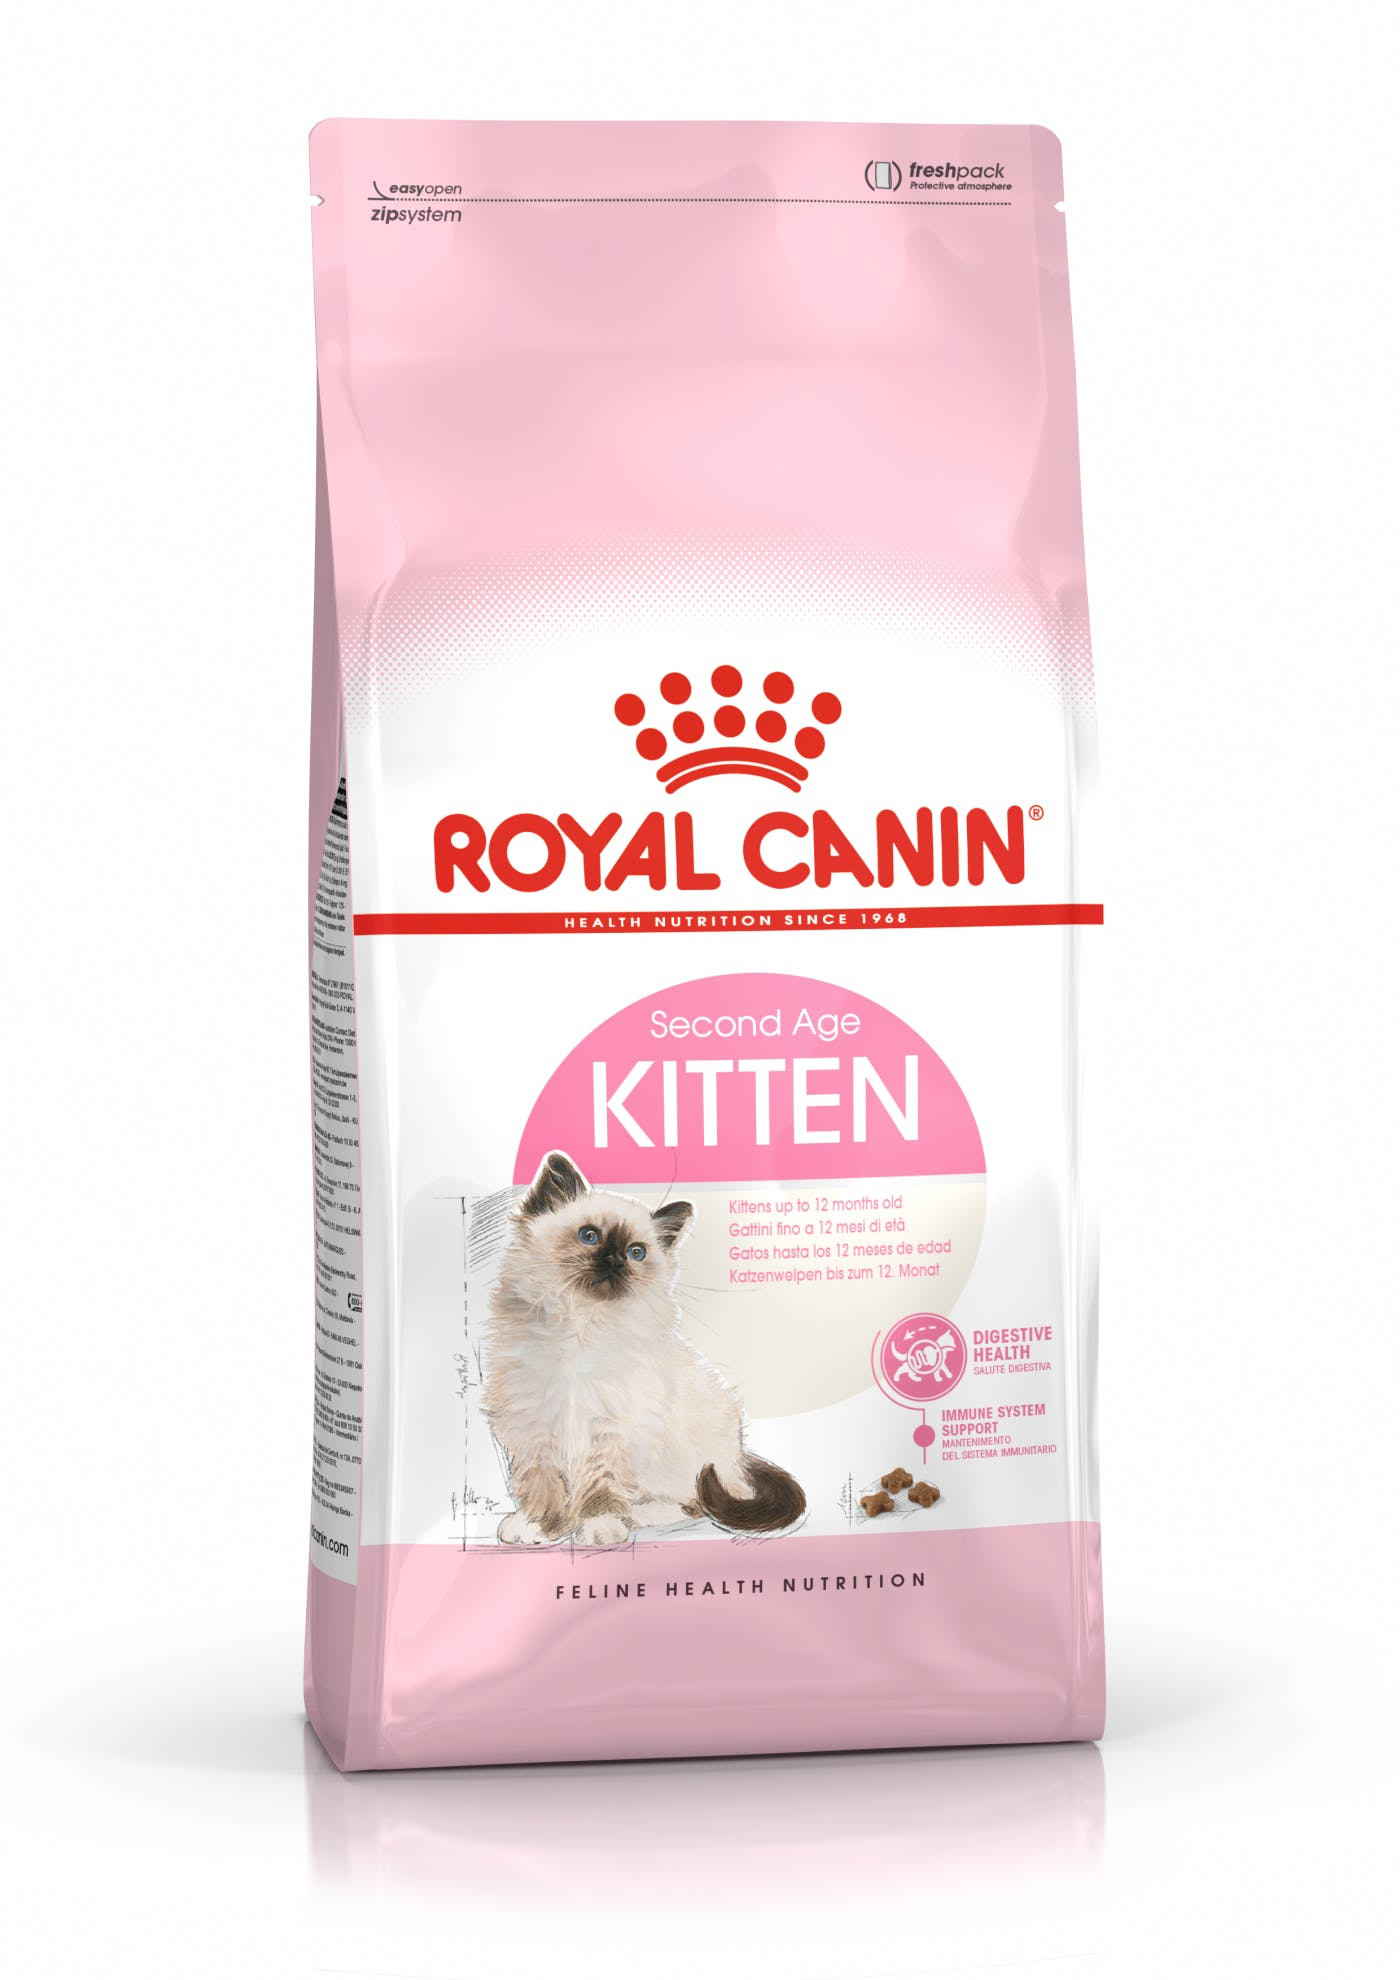 [Copy]Royal Canin Feline Health Nutrition Kitten Dry Food (10kg)